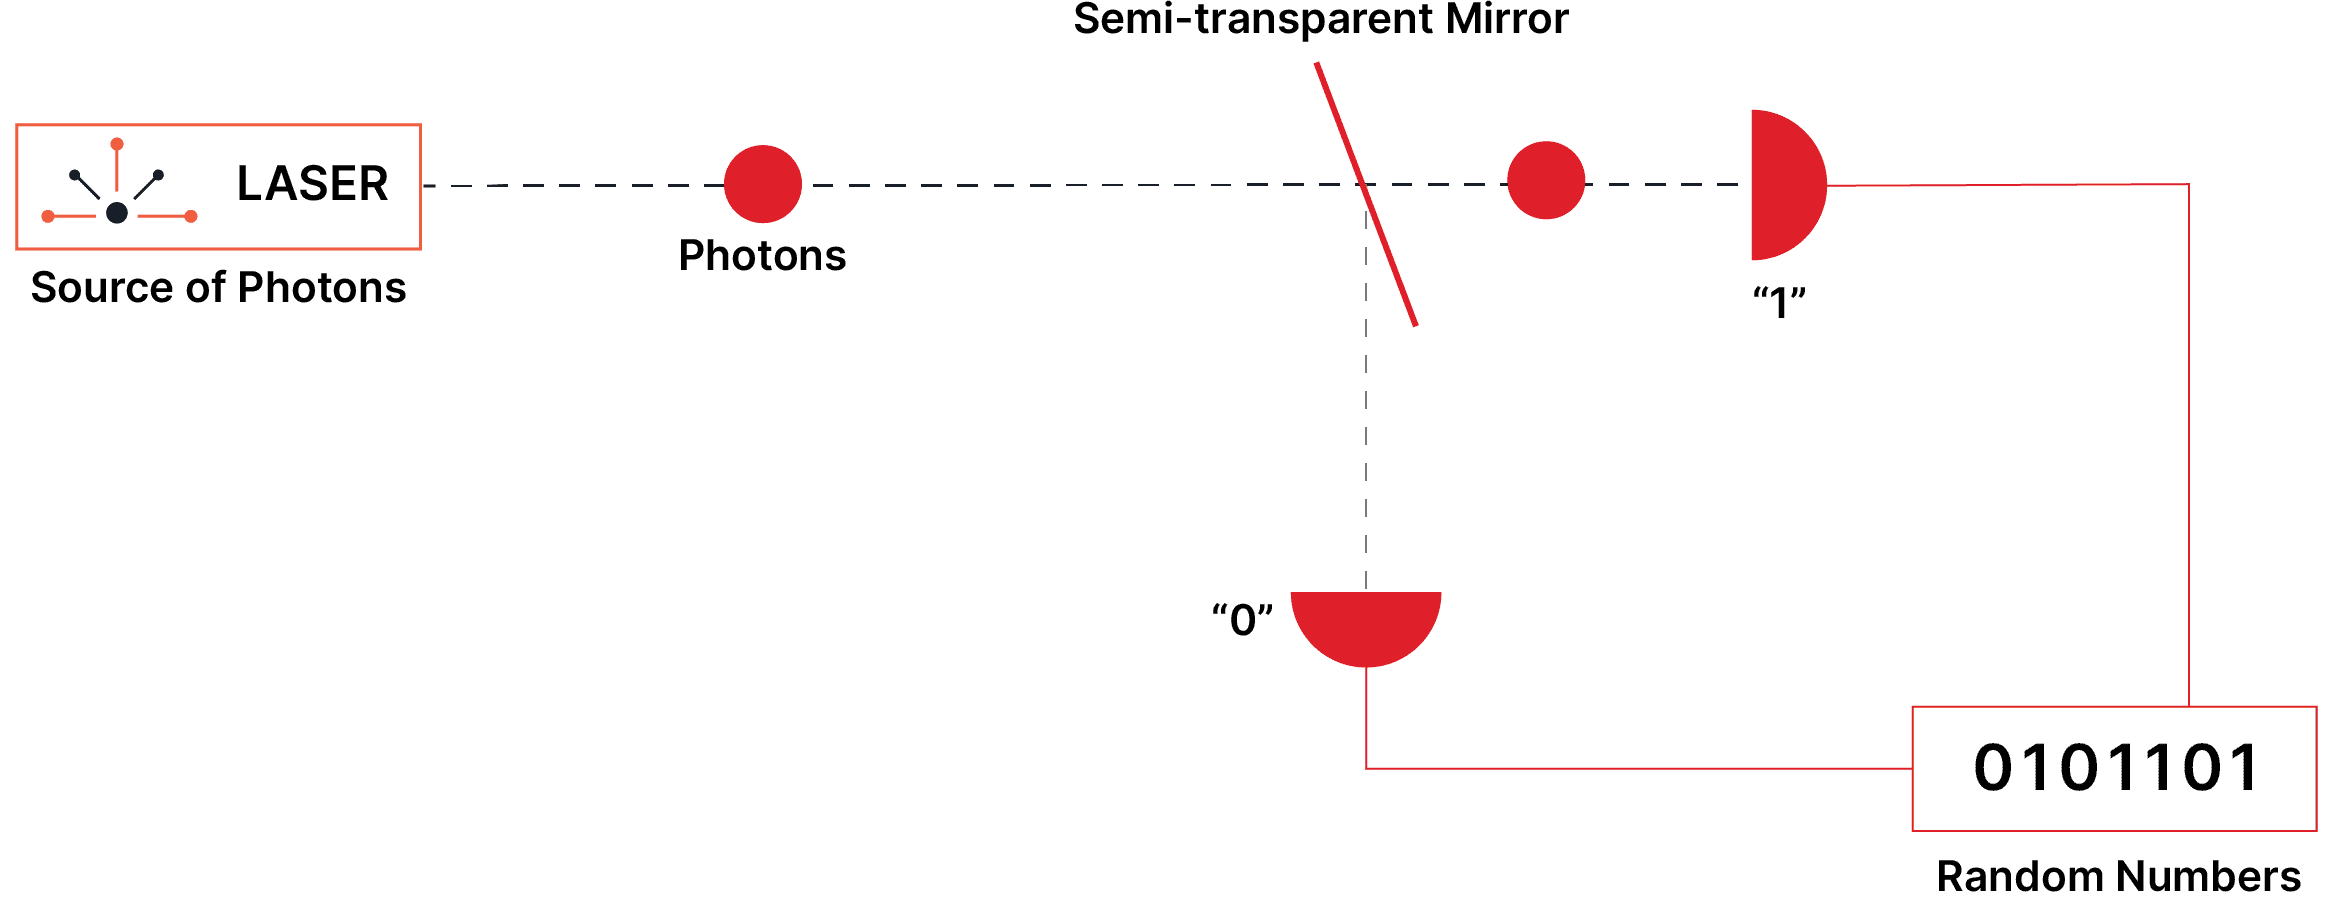 qrng laser diagram